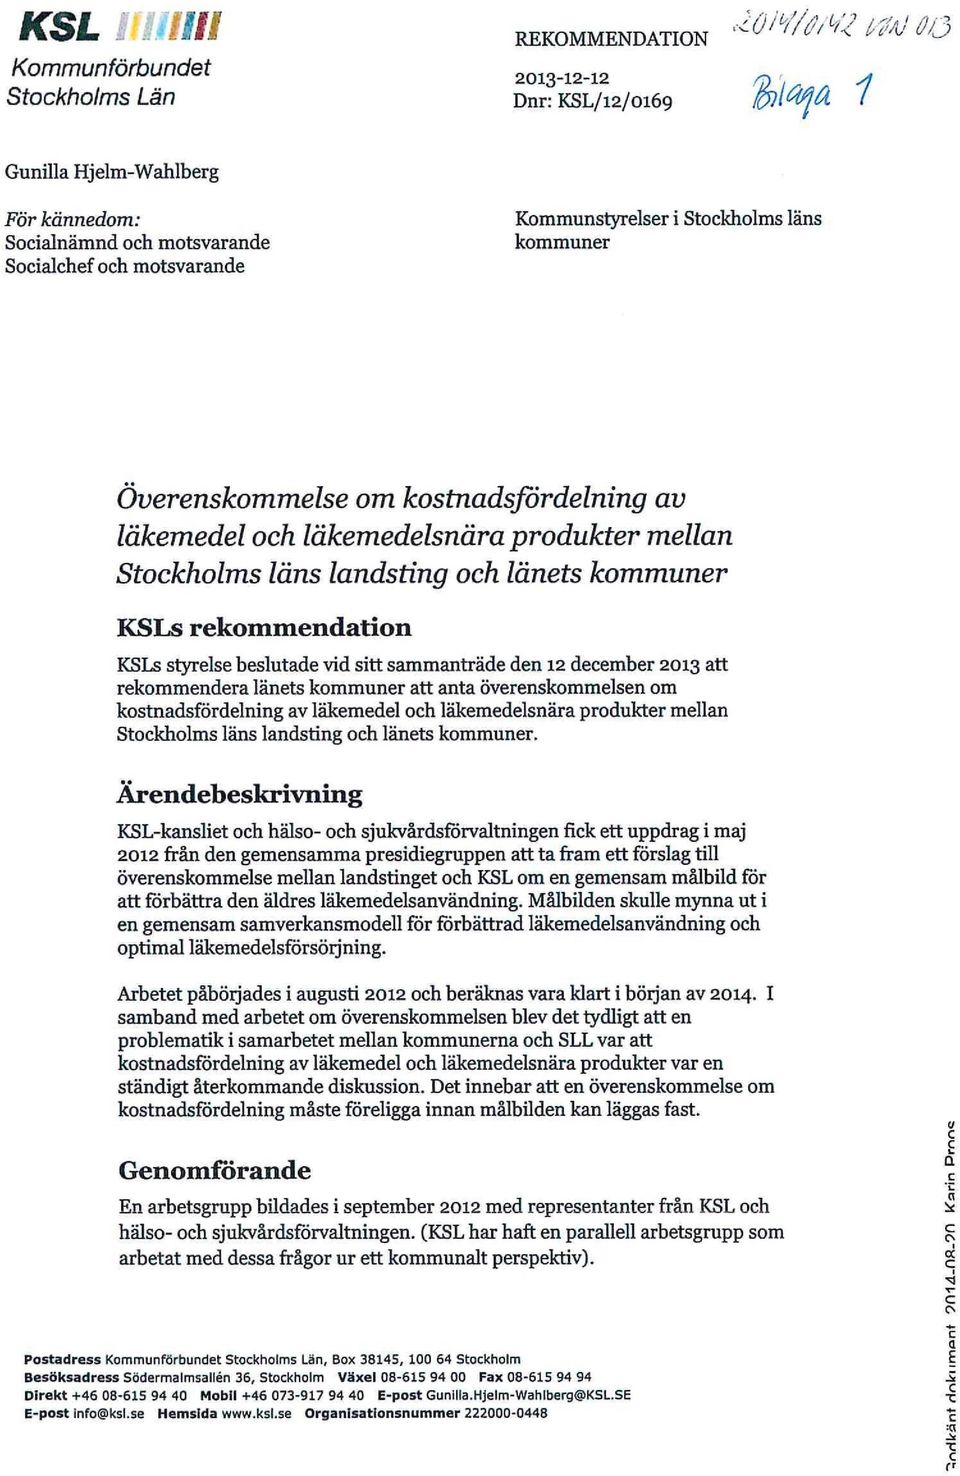 beslutade vid sitt sammanträde den 12 december 2013 att rekommendera länets kommuner att anta överenskommelsen om kostnadsfördelning av läkemedel och läkemedelsnära produkter mellan Stockholms läns